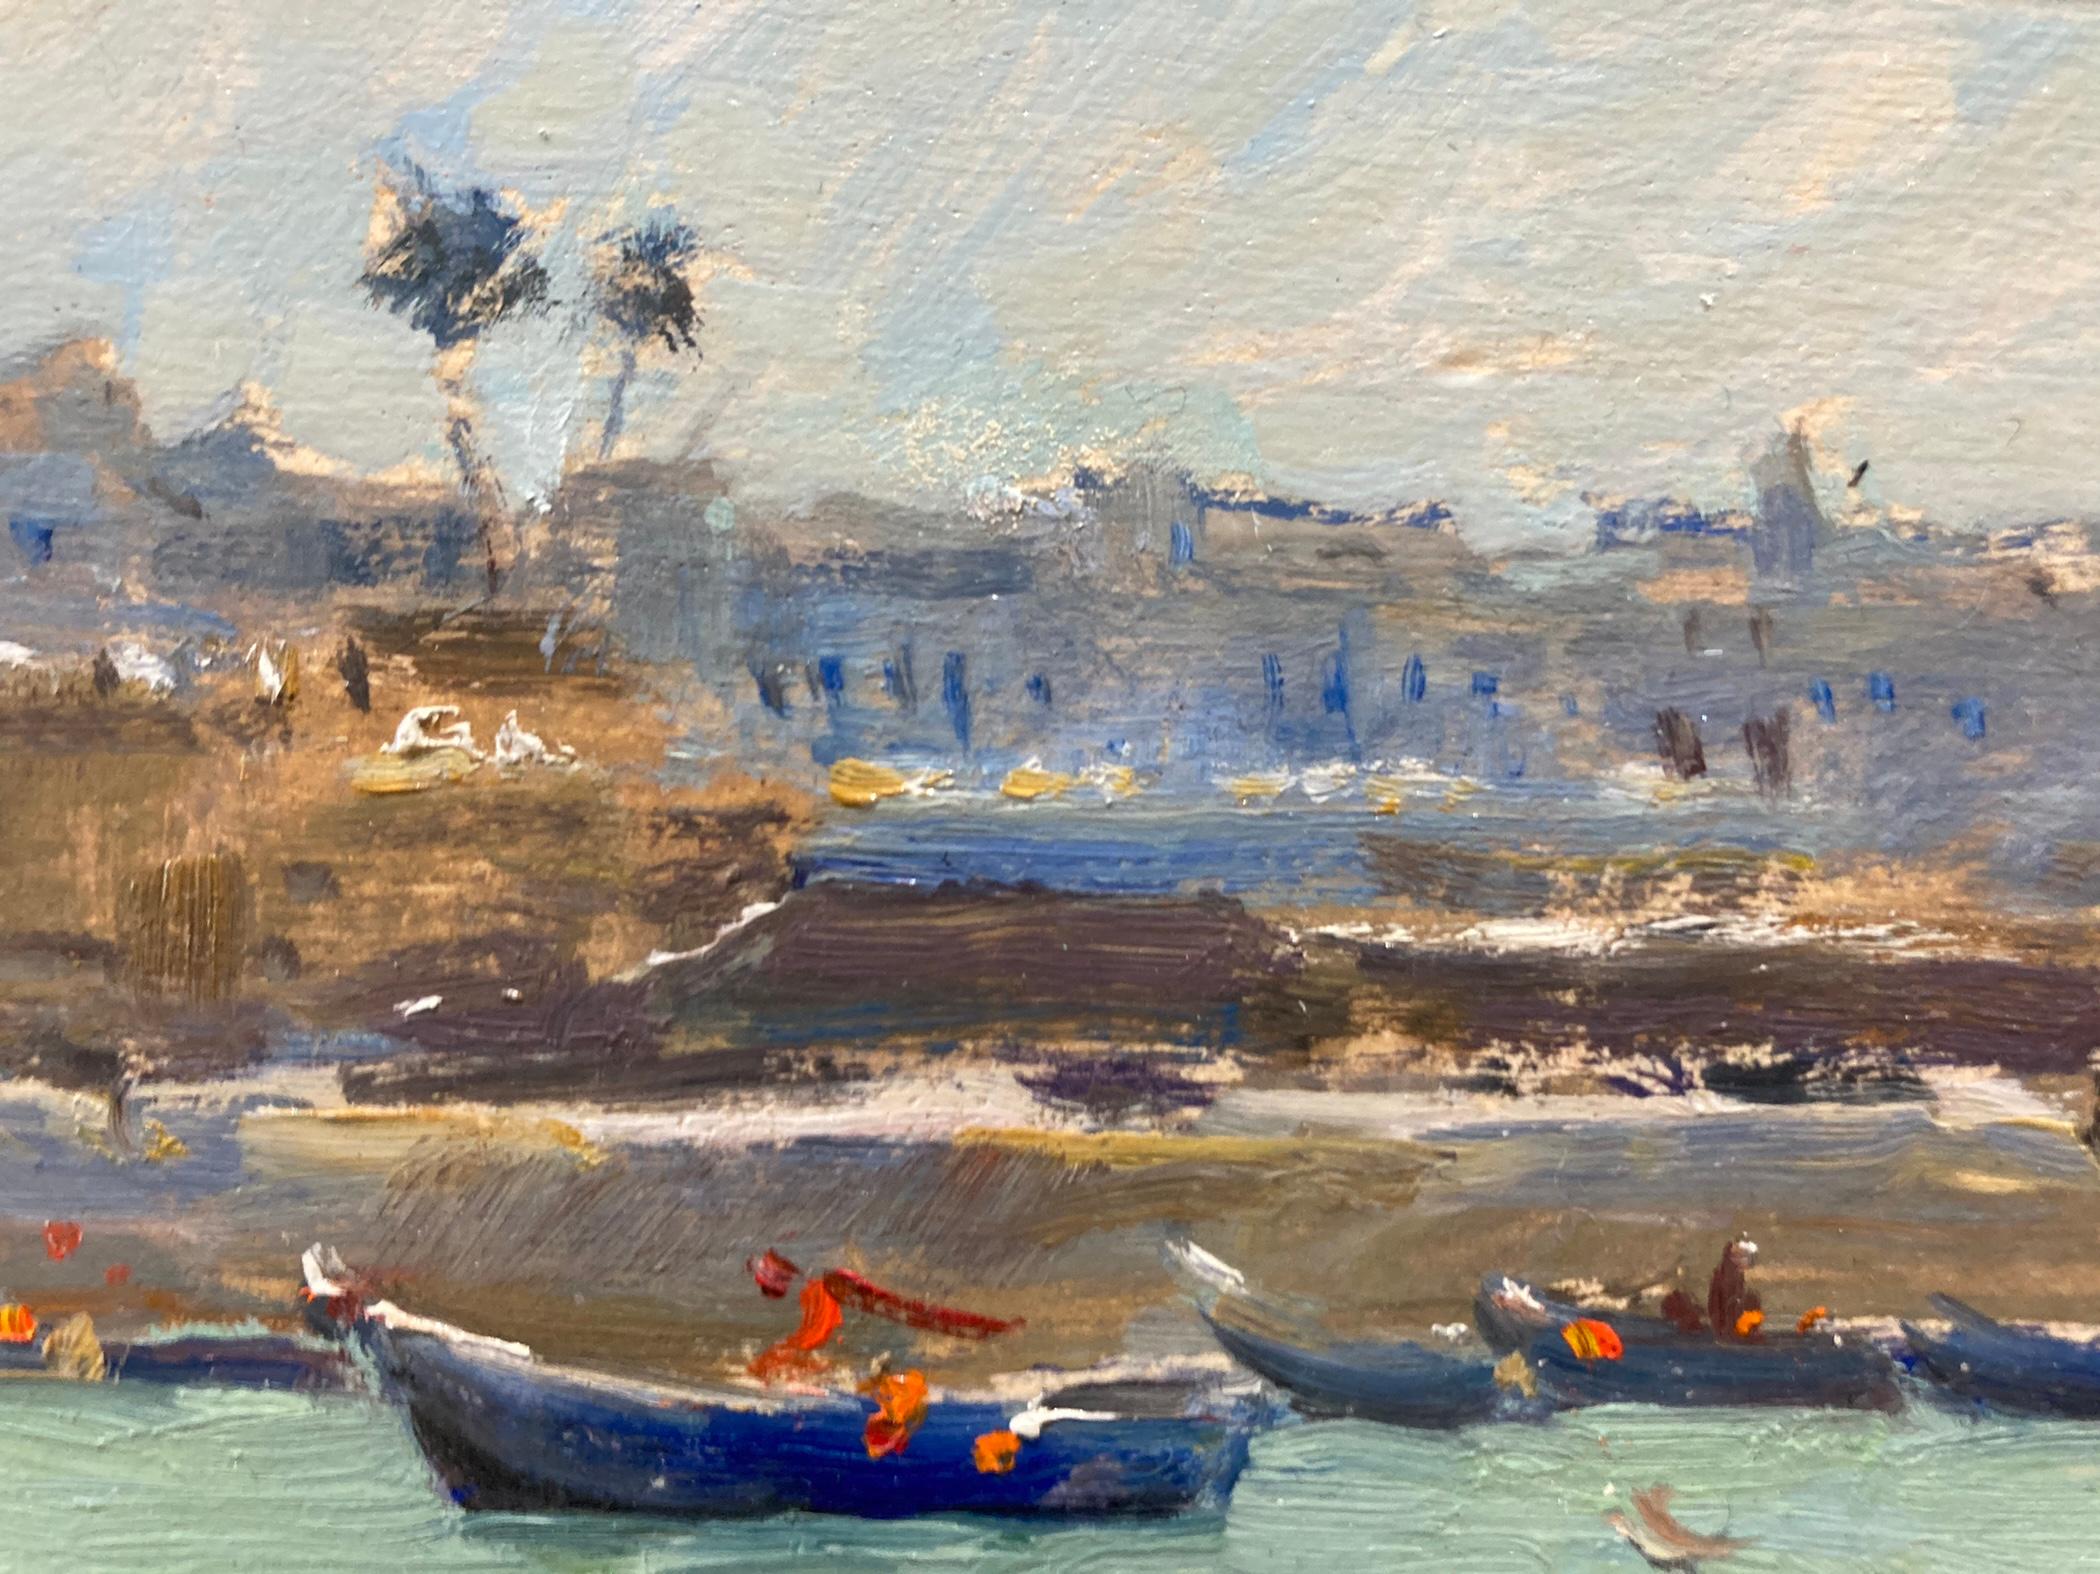 Dans le port d'Assilah - Gris Landscape Painting par Tina Orsolic Dalessio